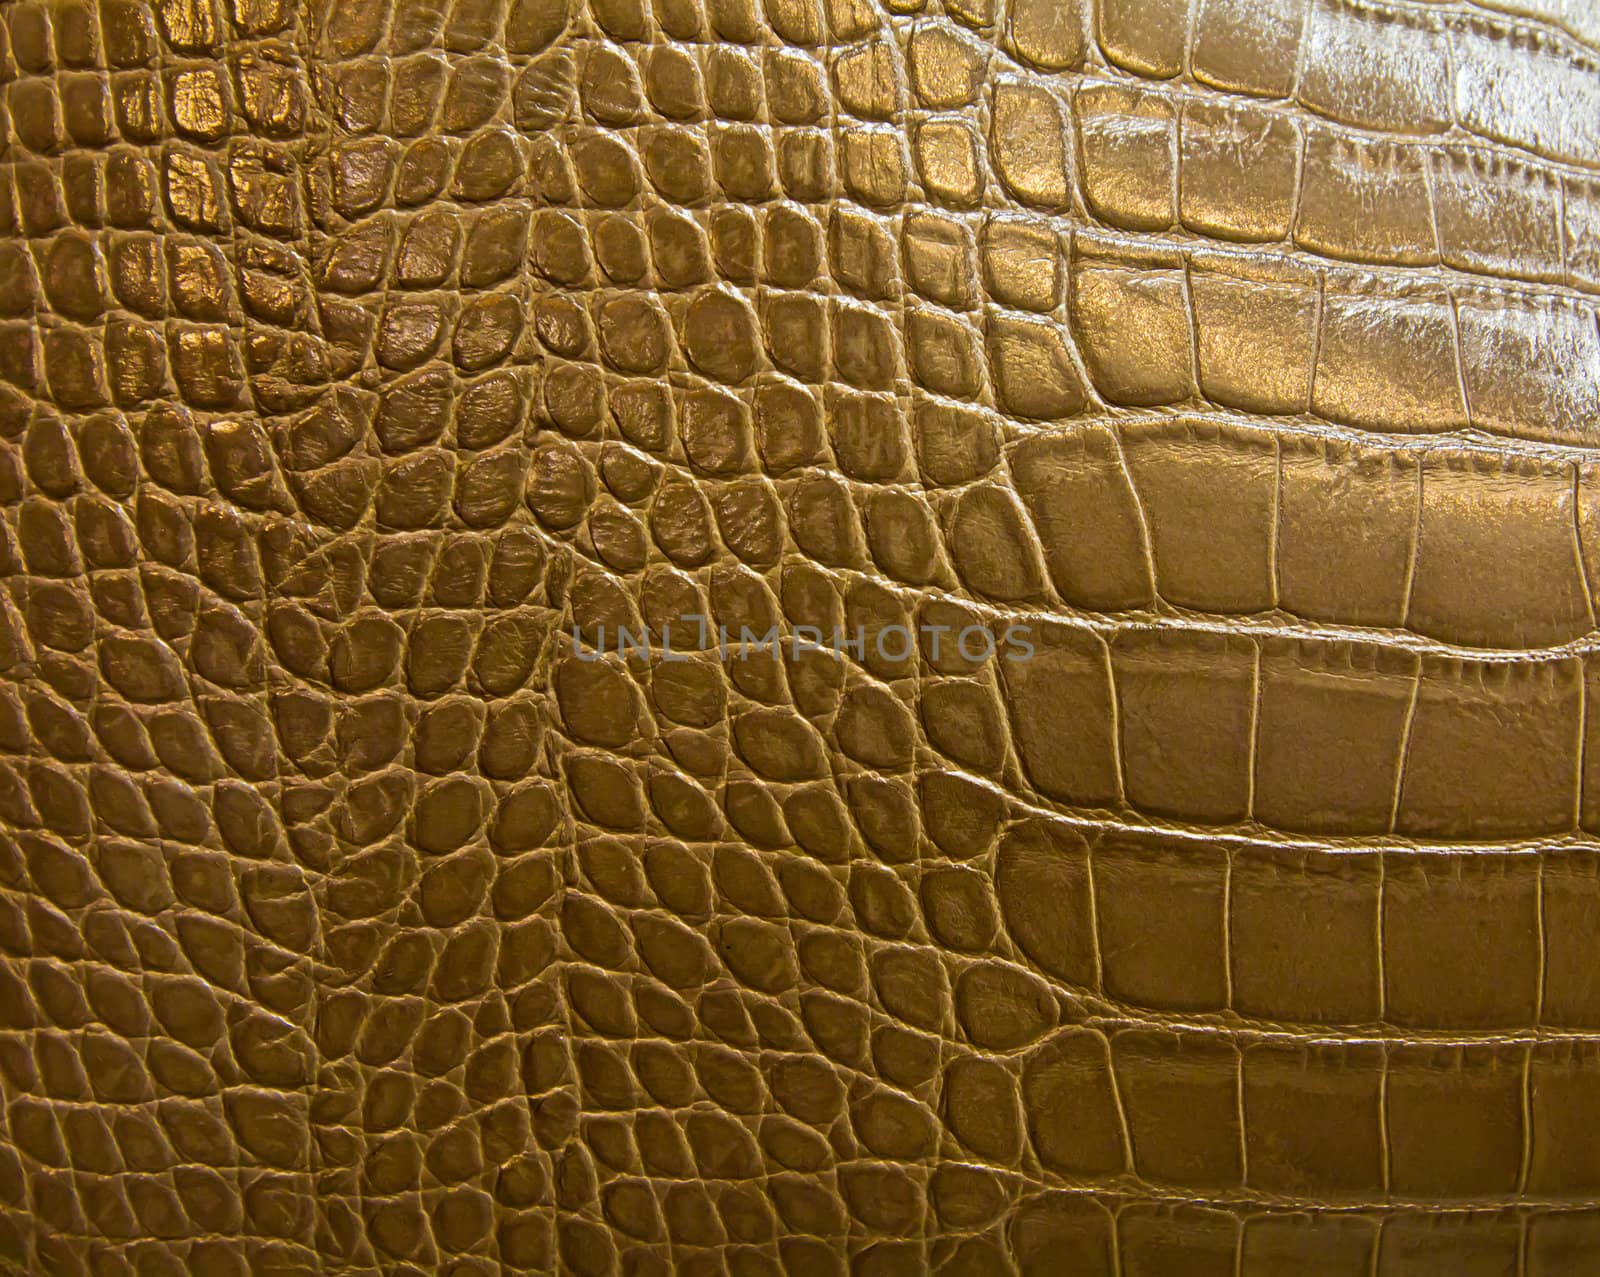 crocodile skin texture by tungphoto